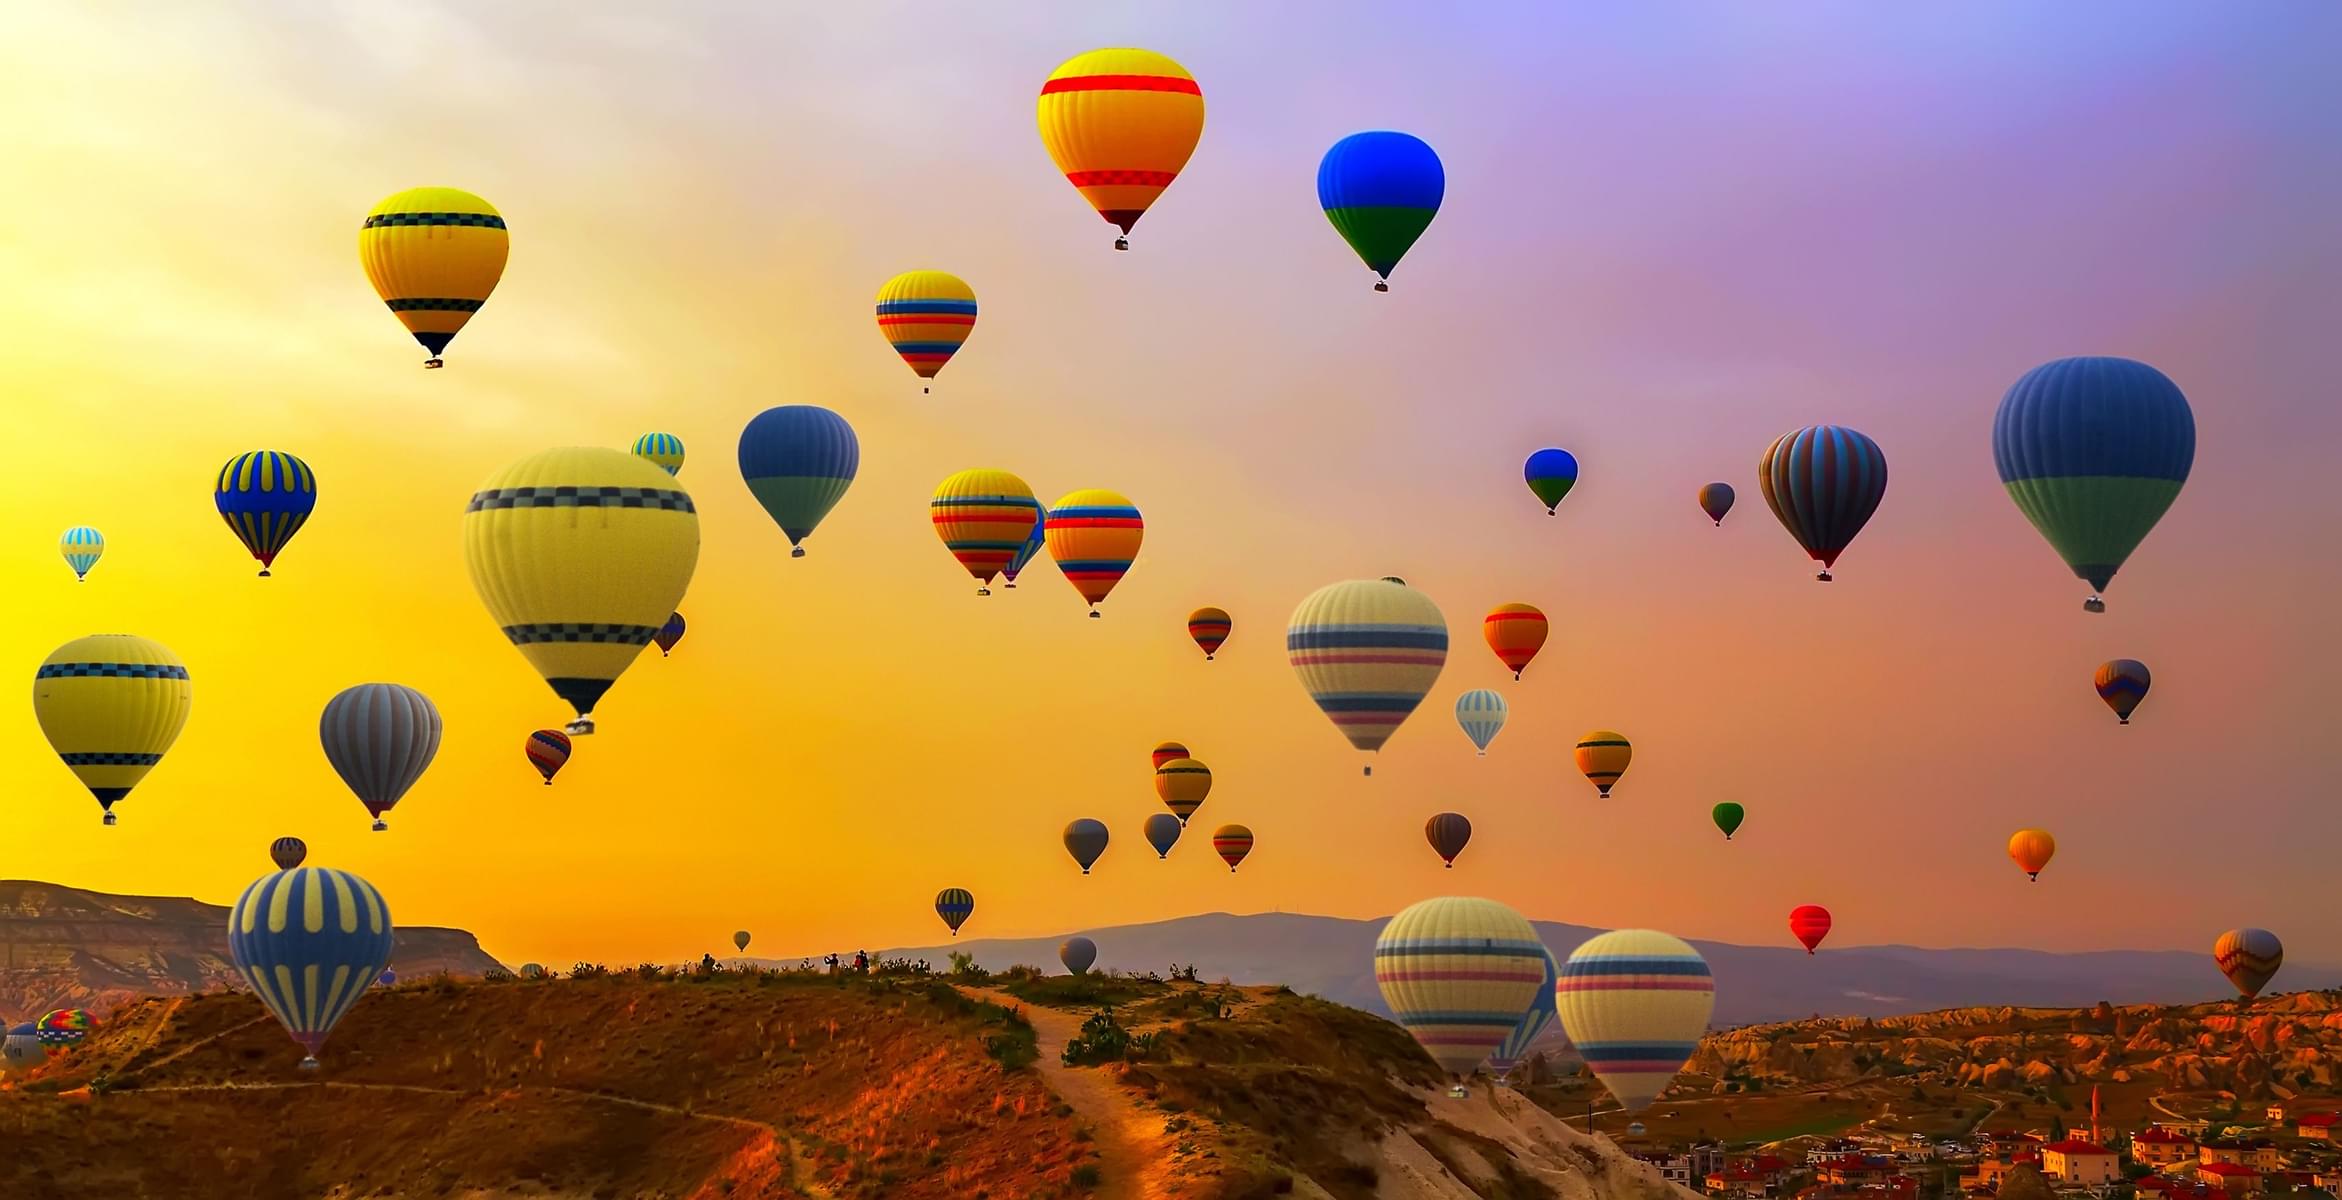 Cappadocia Hot Air Balloon Tour Over Fairy Chimneys